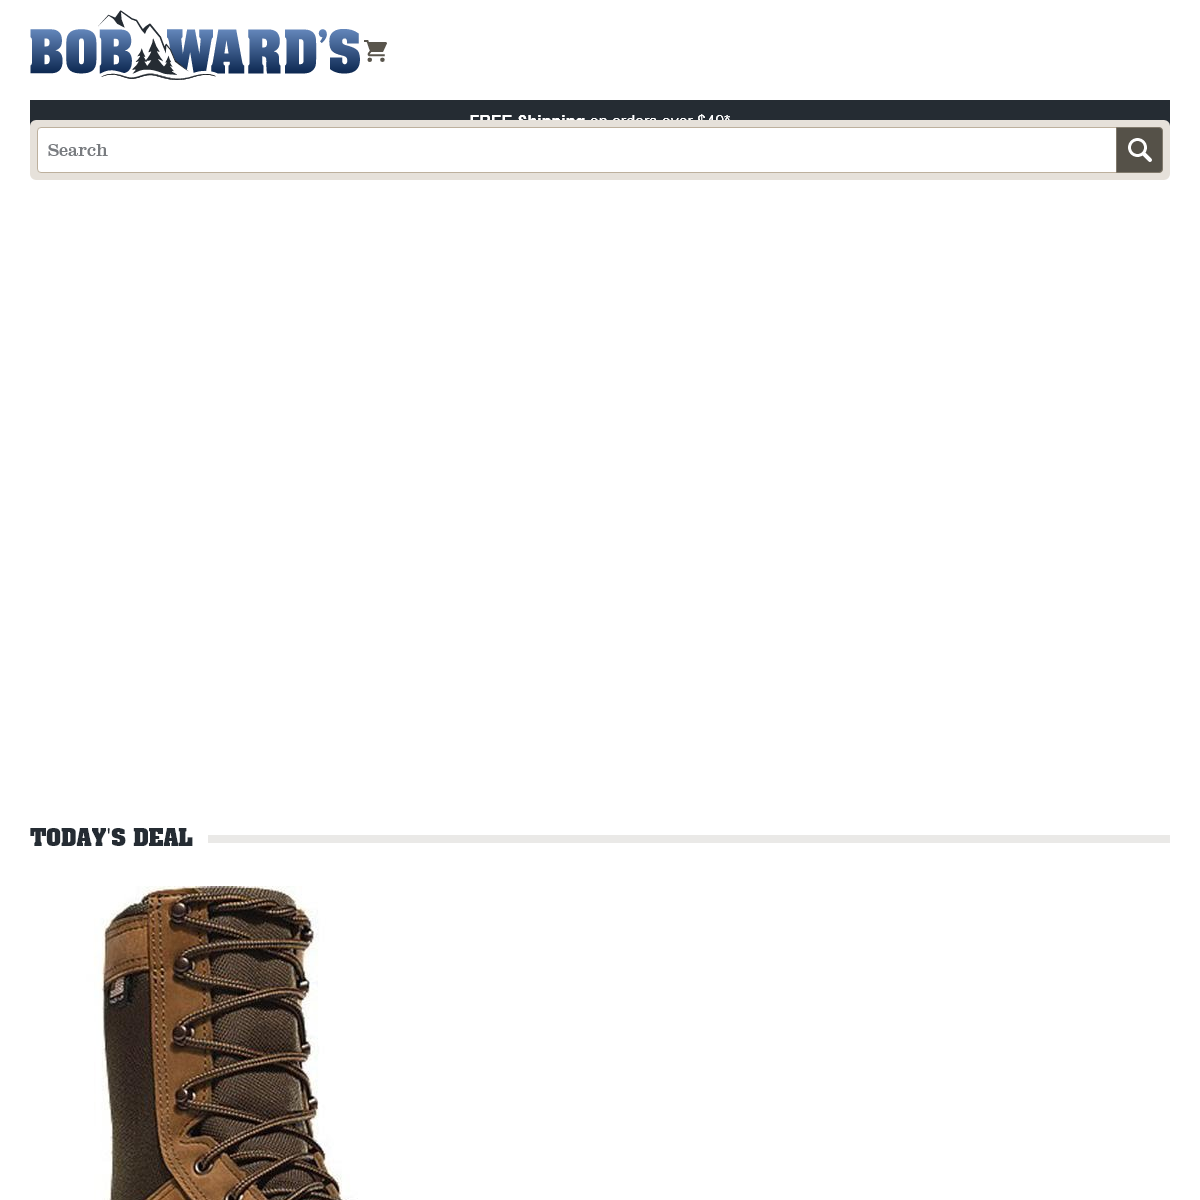 A complete backup of bobwards.com